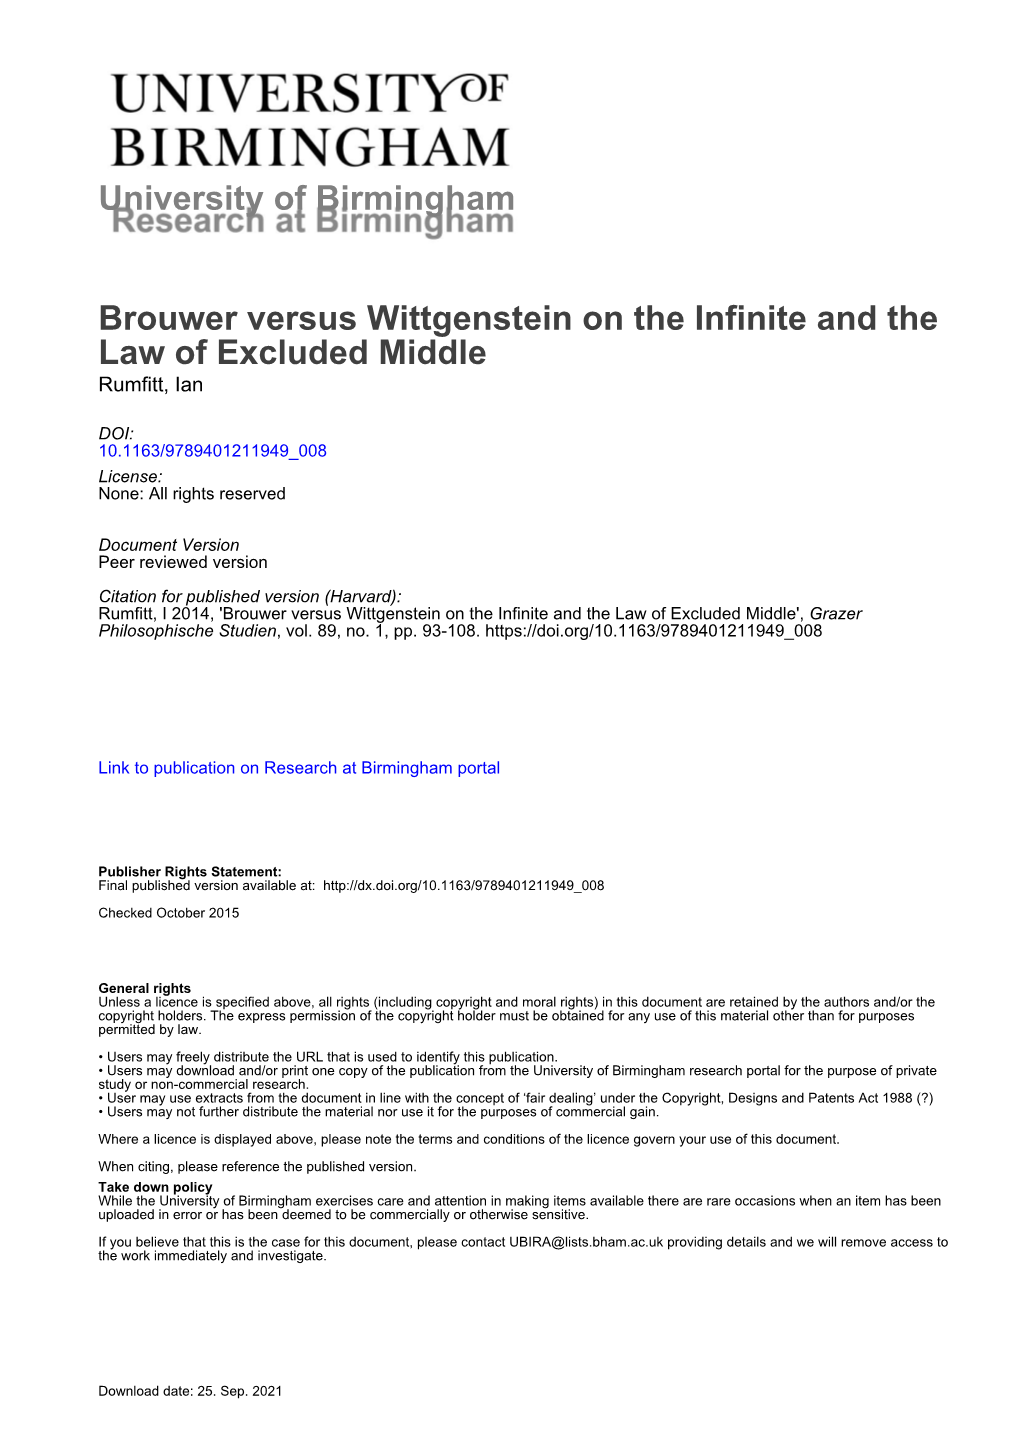 University of Birmingham Brouwer Versus Wittgenstein on the Infinite